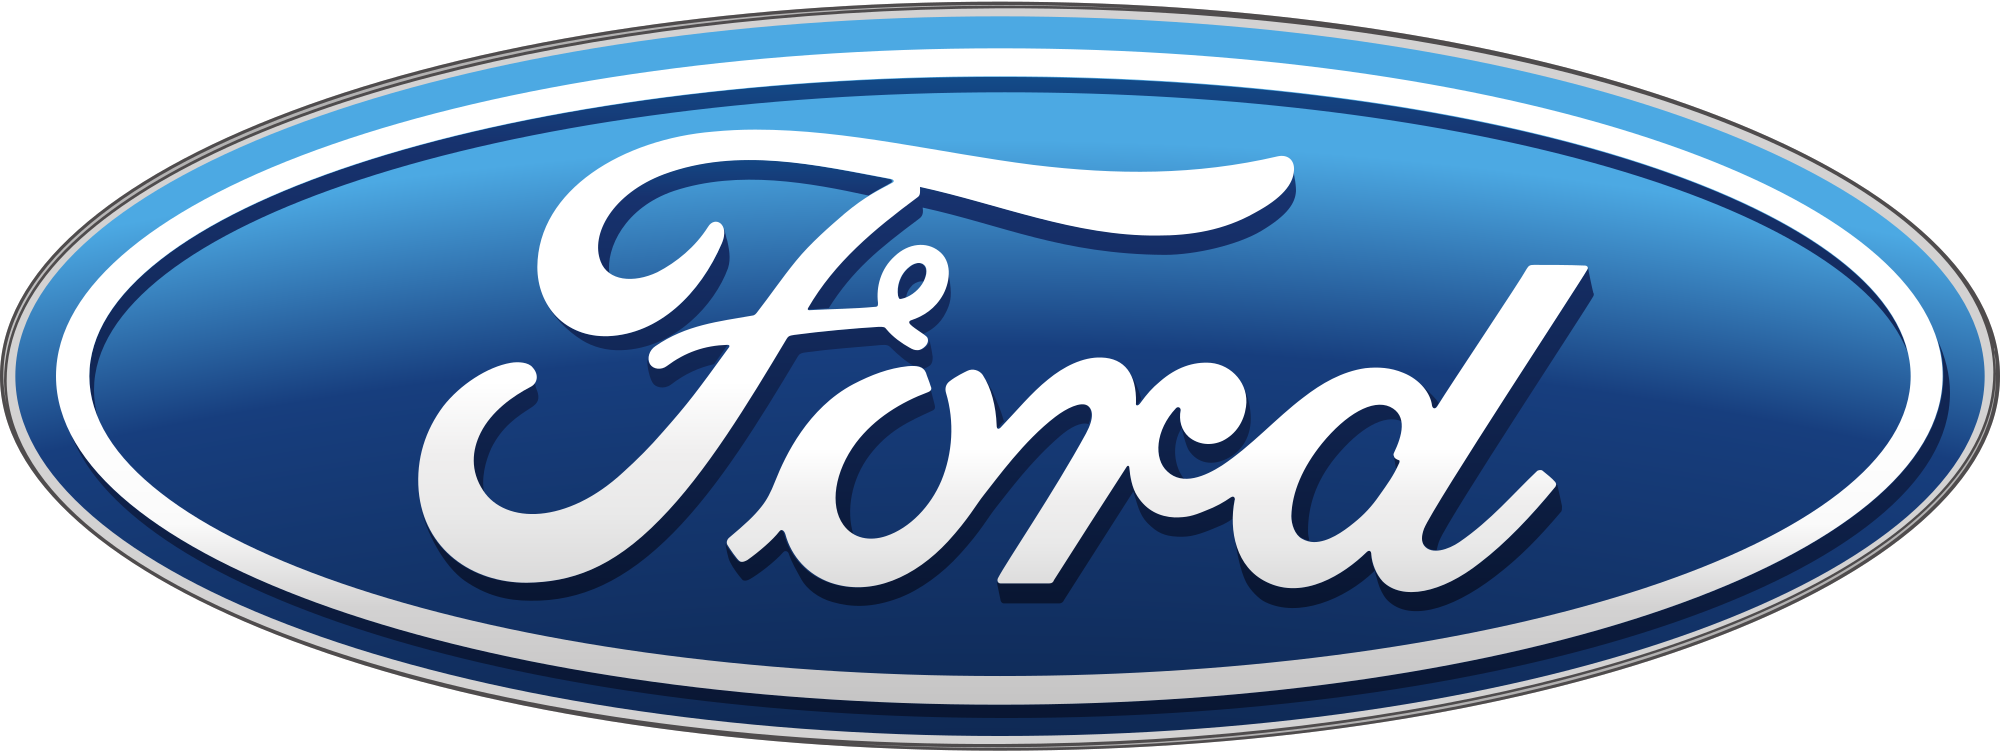 ford-motor-company